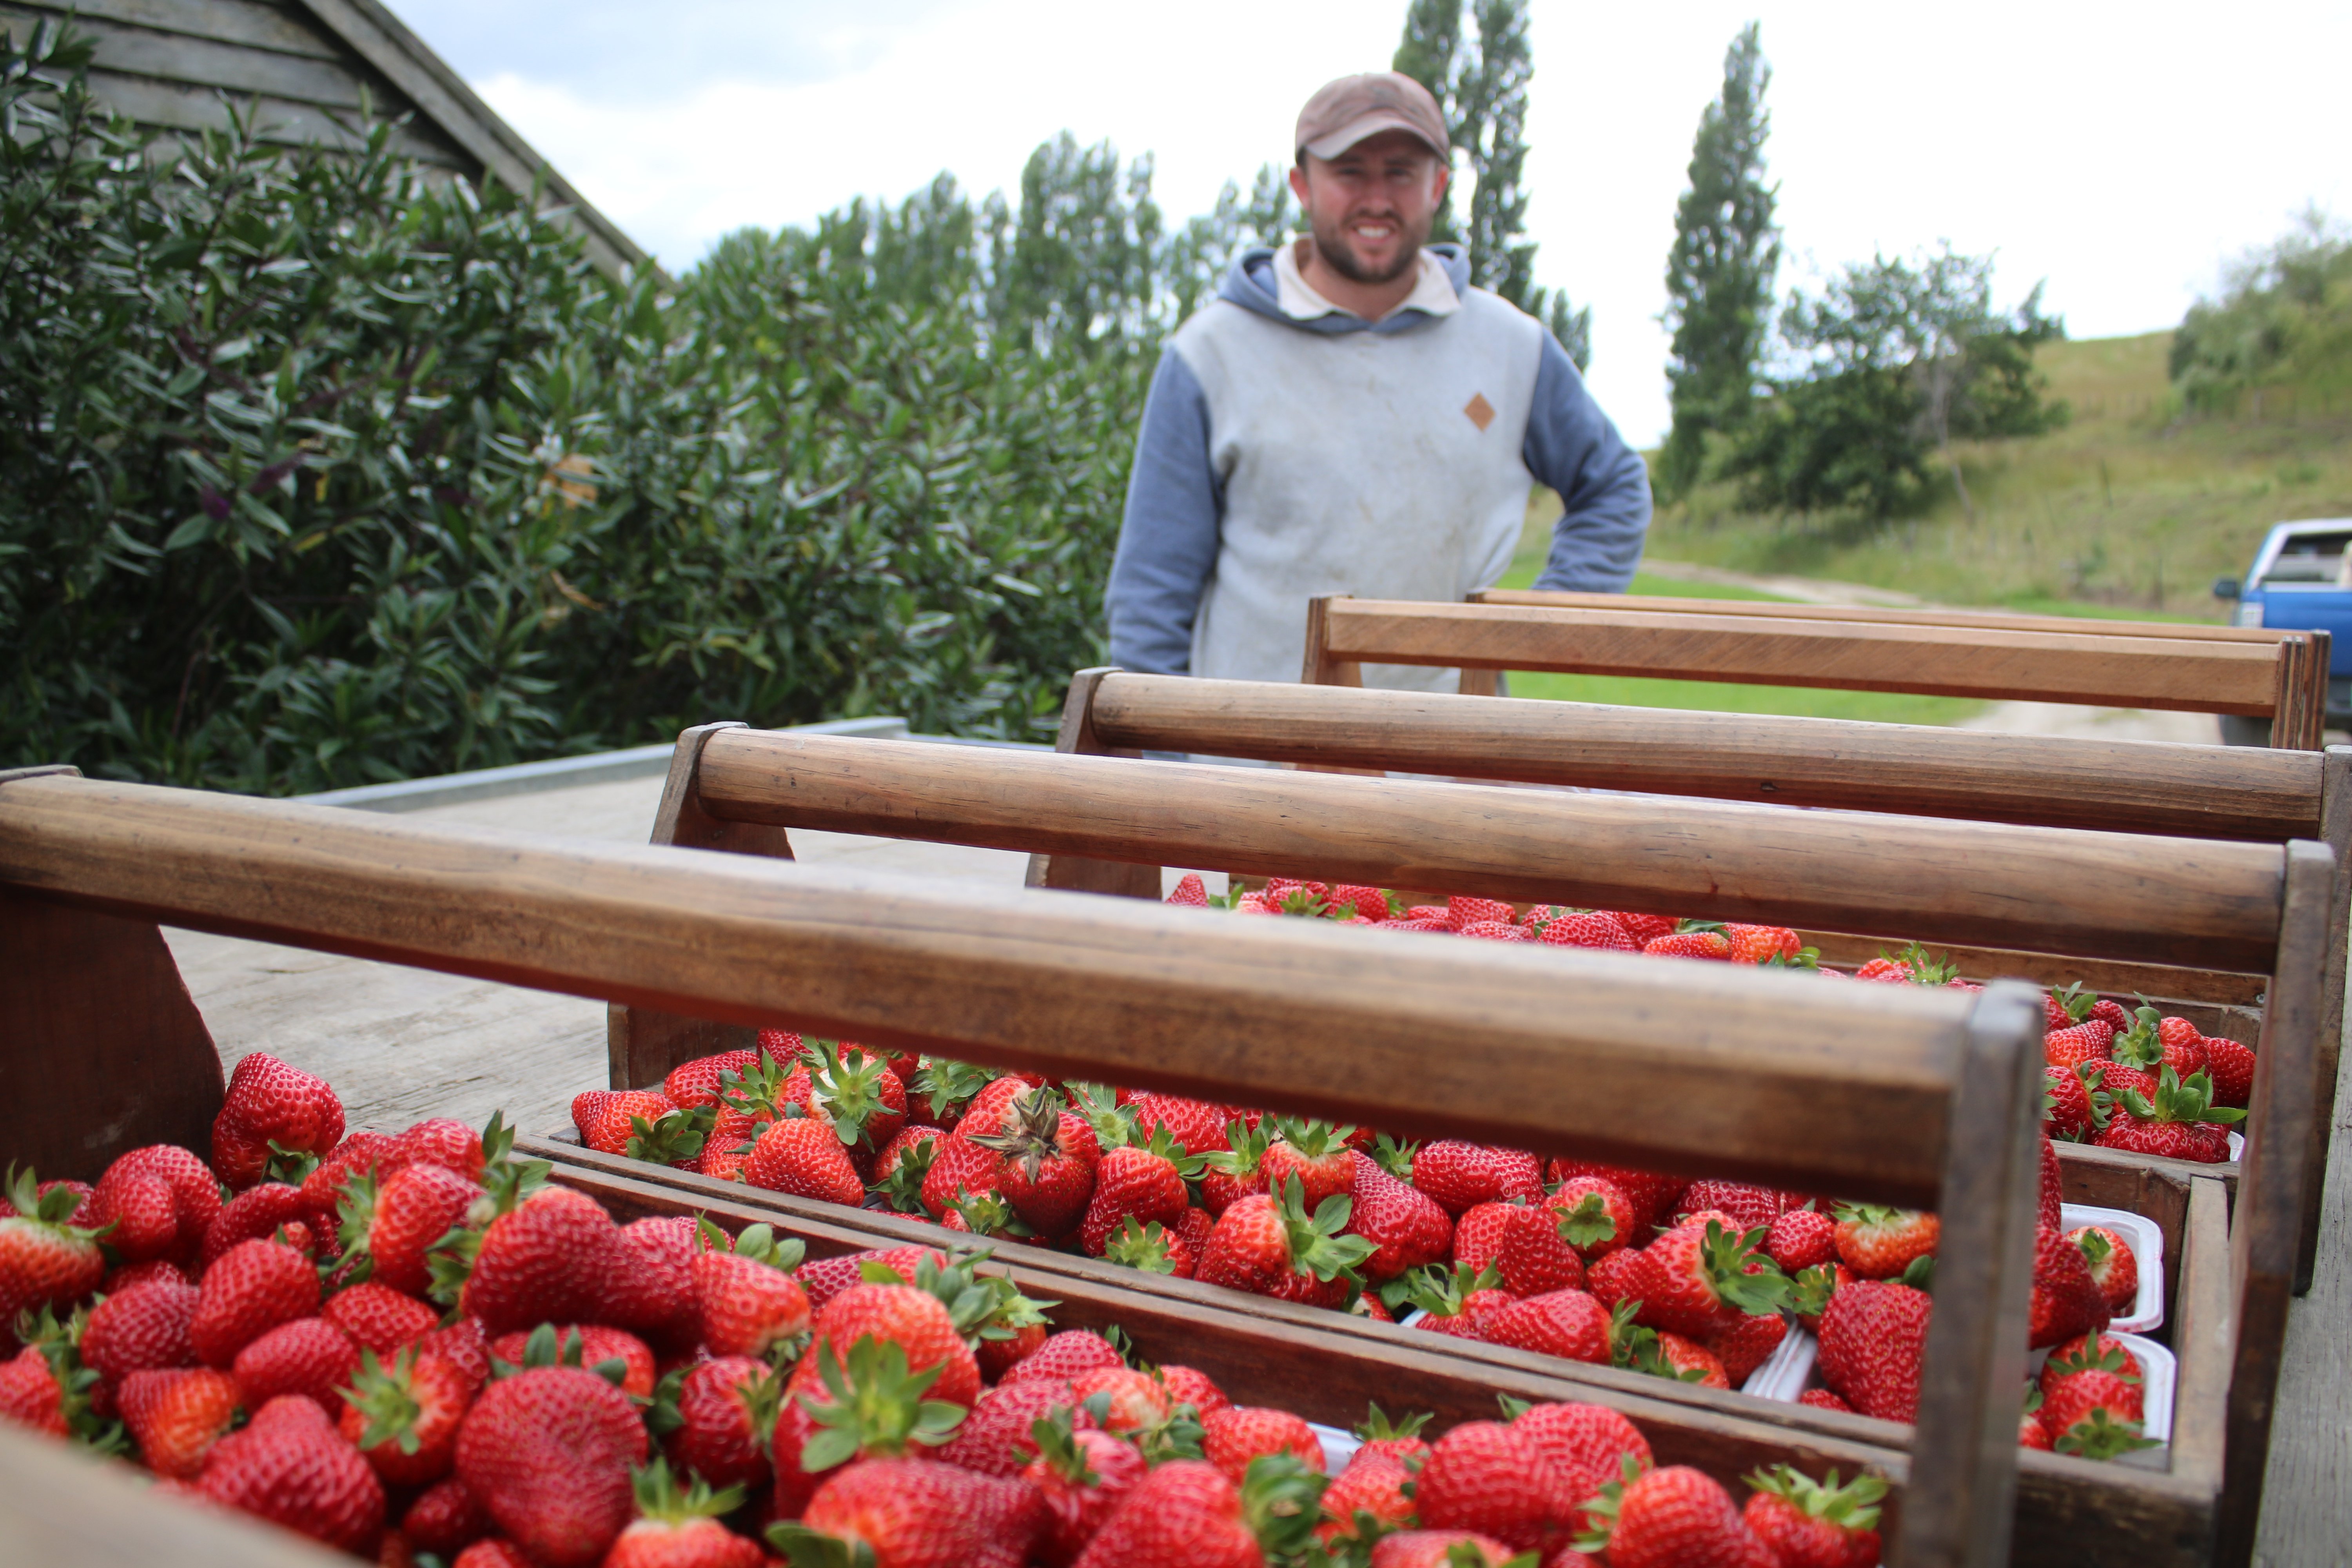 Matsinger’s Berry Farm manager Hann Matsinger with some of the morning’s strawberry harvest....